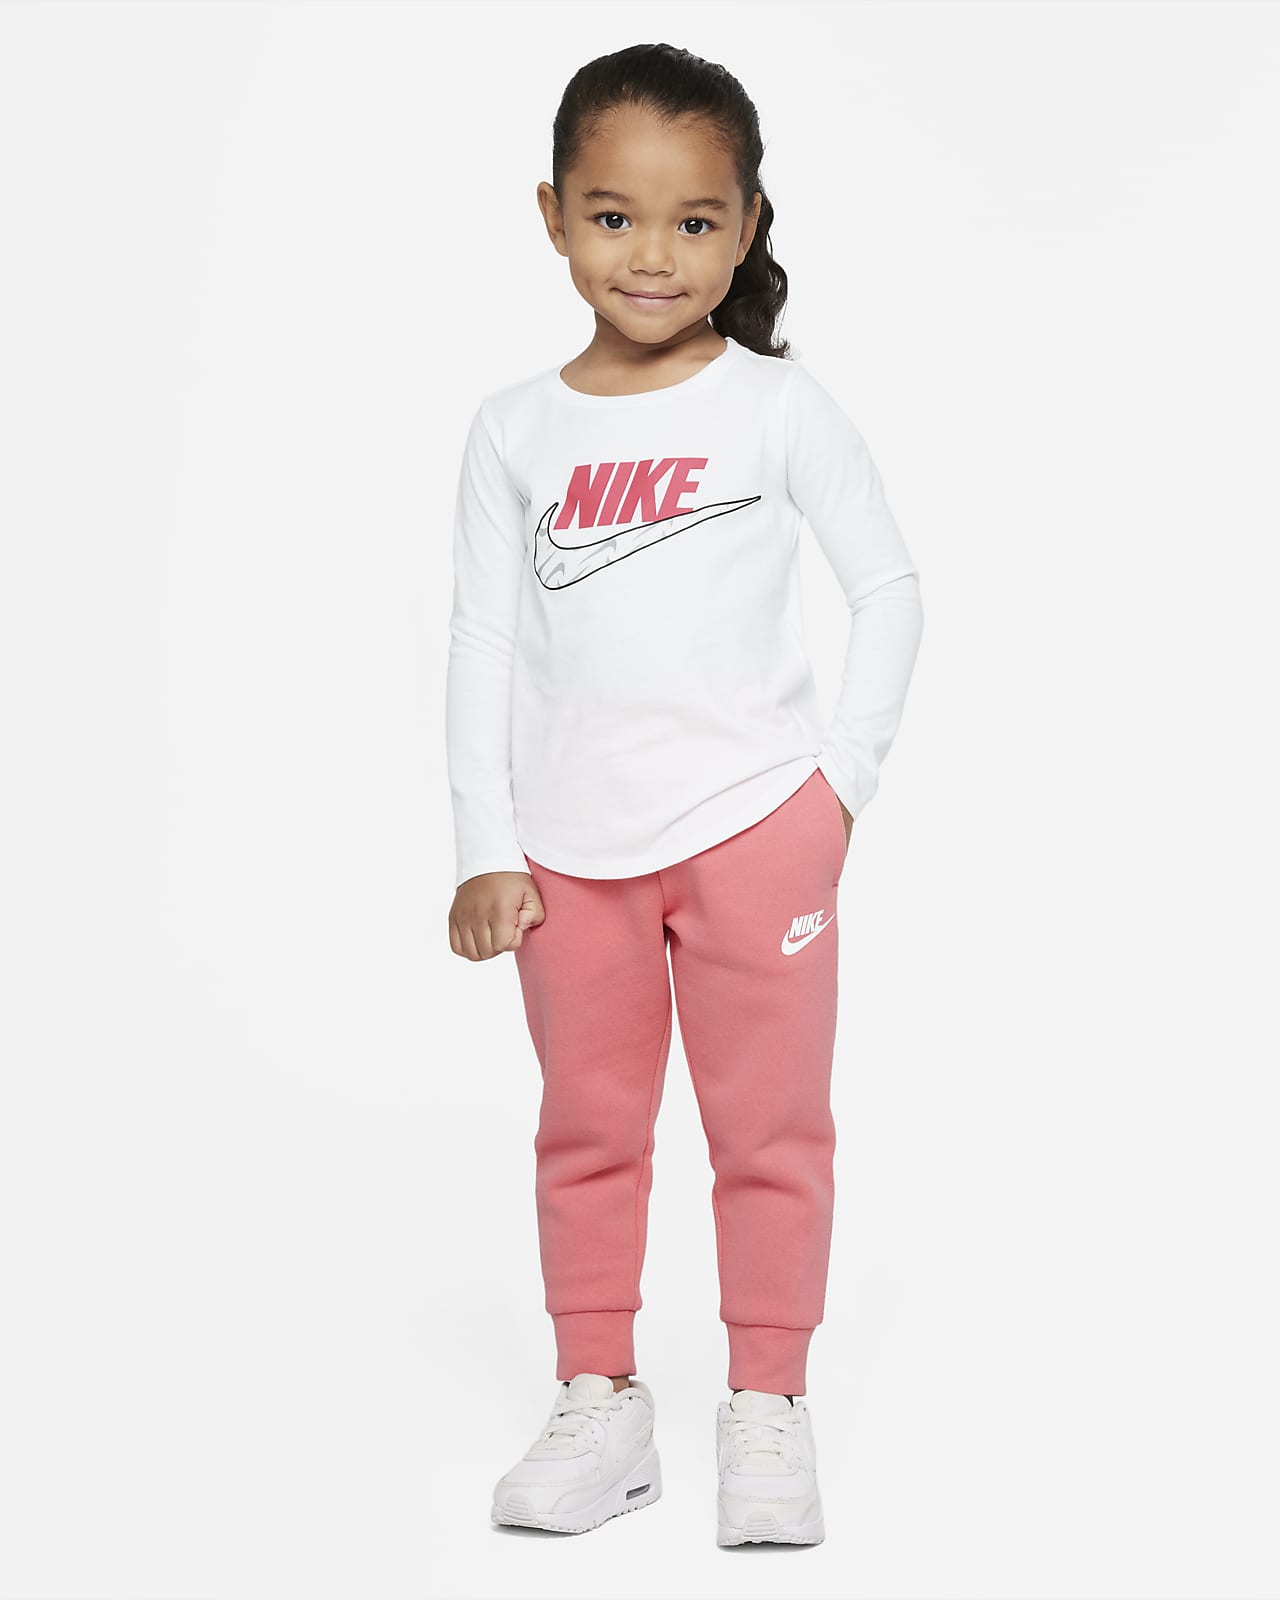 Club Toddler Nike Pants. Sportswear Fleece